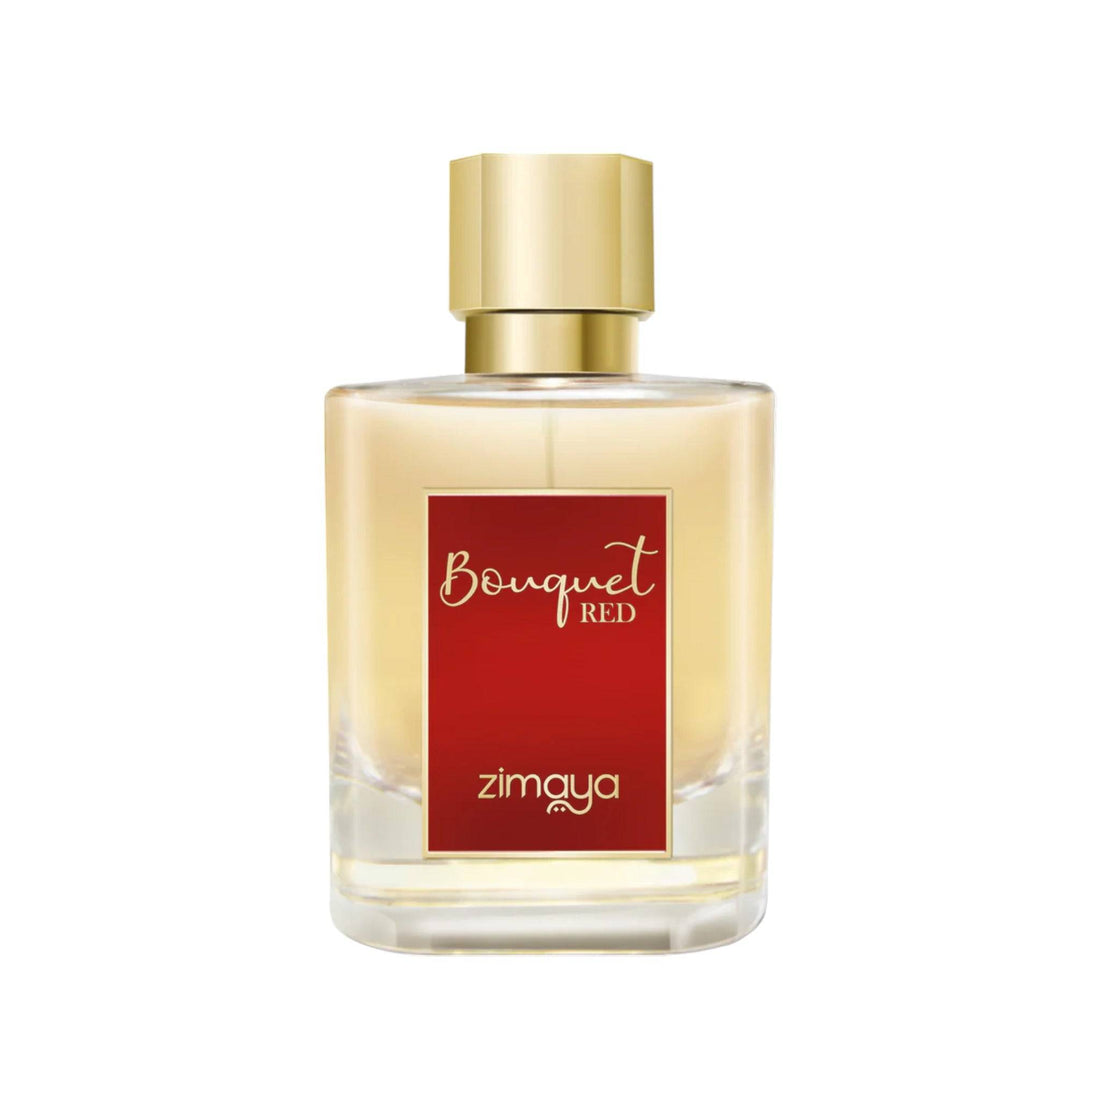 Sophisticated 100ml bottle of Zimaya Bouquet Red Eau De Parfum, showcasing its elegant design and rich color scheme.